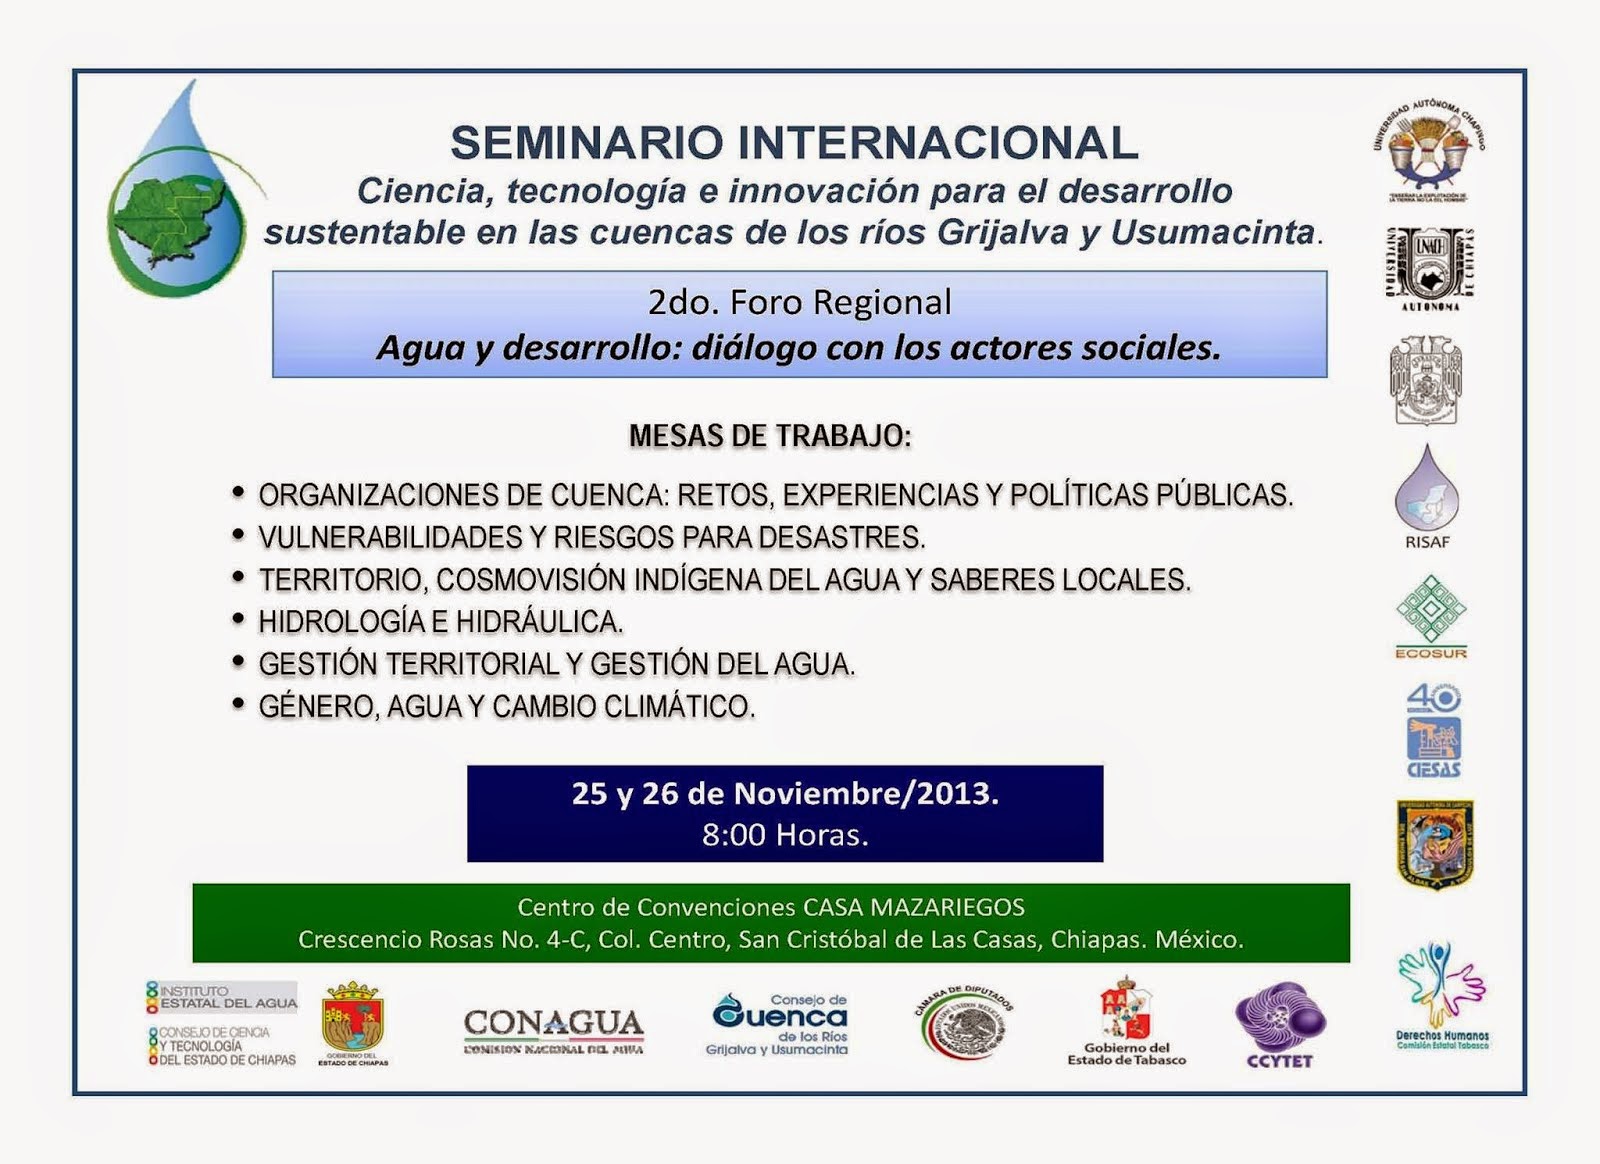 Seminario Internacional de los rios Grijalva y Usumacinta